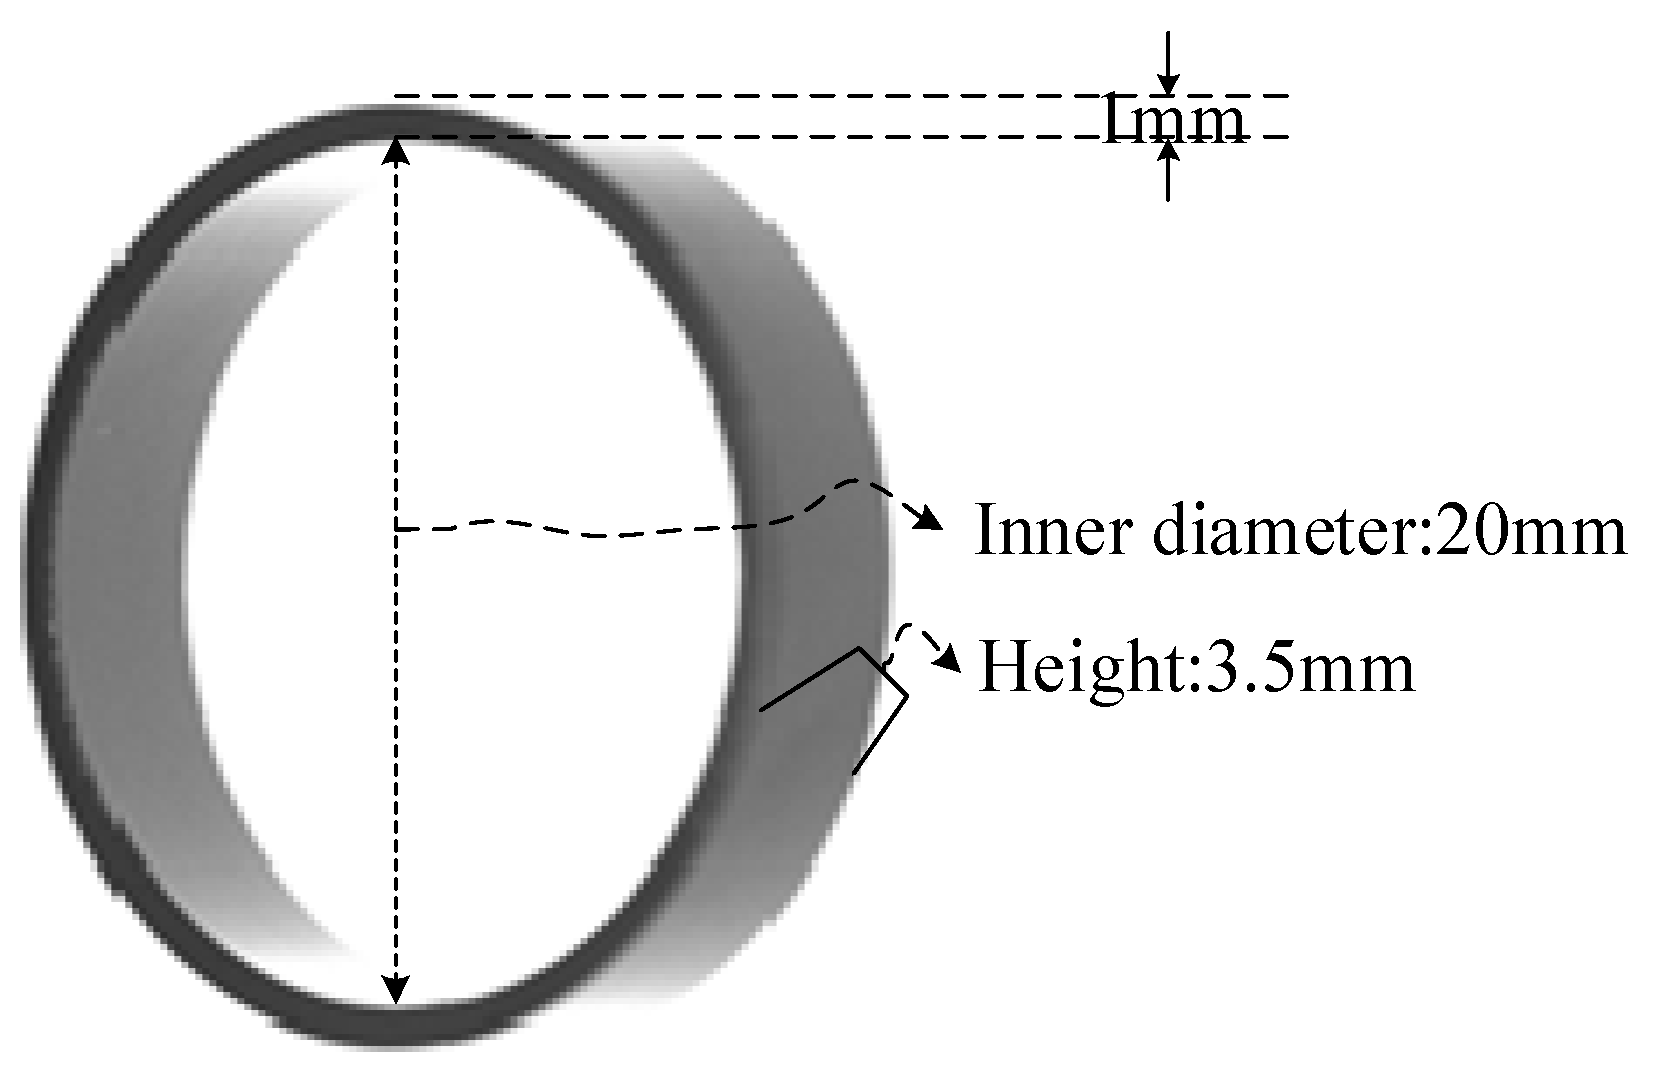 Landolt C Eye Test Chart broken ring medical illustration character symbol  diagram. Japanese vision test line vector - SuperStock